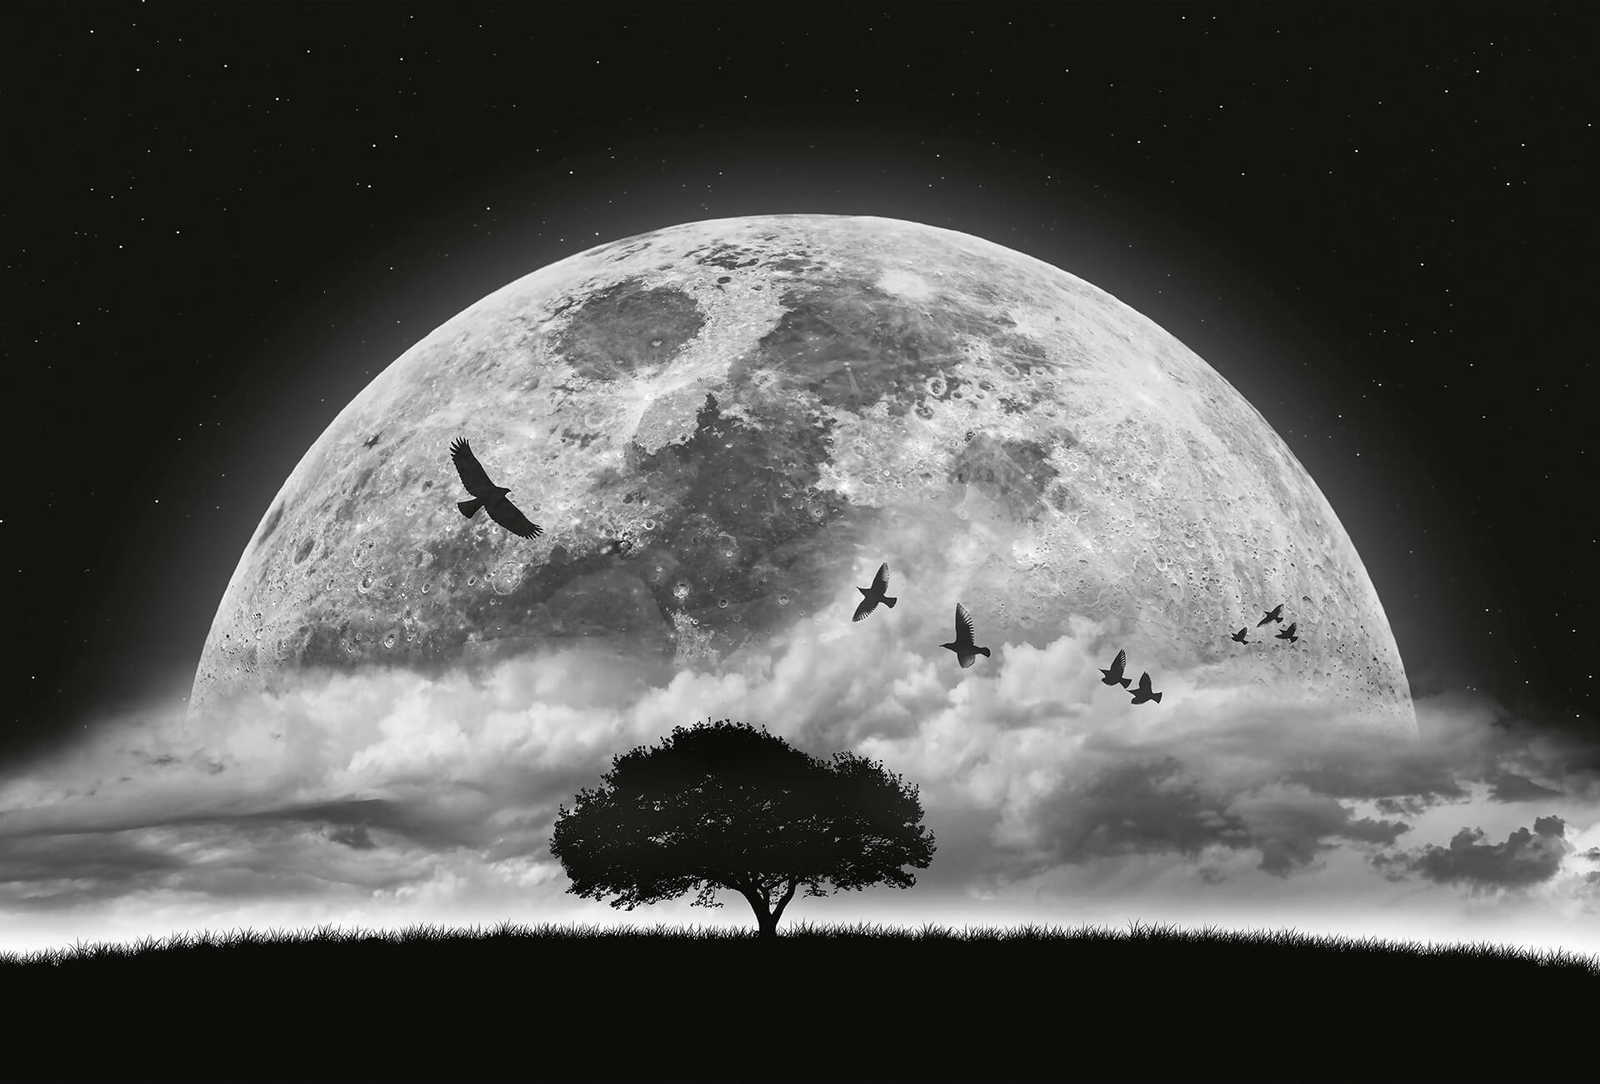         Fototapete Mond und Vögel – Schwarz, Weiß
    